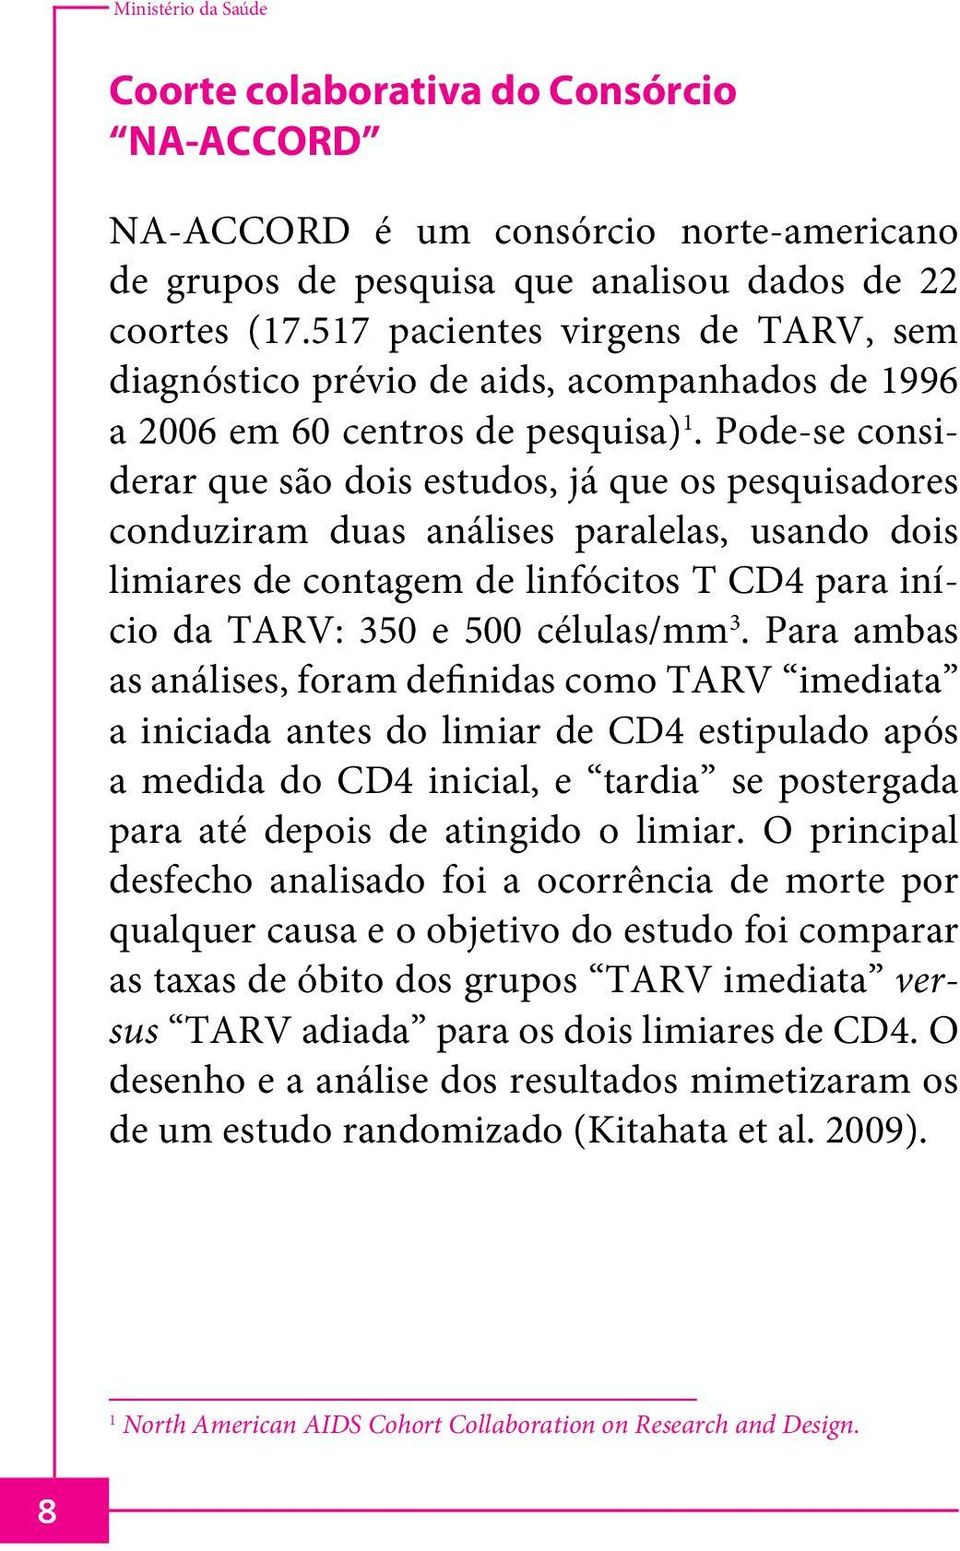 Pode-se considerar que são dois estudos, já que os pesquisadores conduziram duas análises paralelas, usando dois limiares de contagem de linfócitos T CD4 para início da TARV: 350 e 500 células/mm 3.